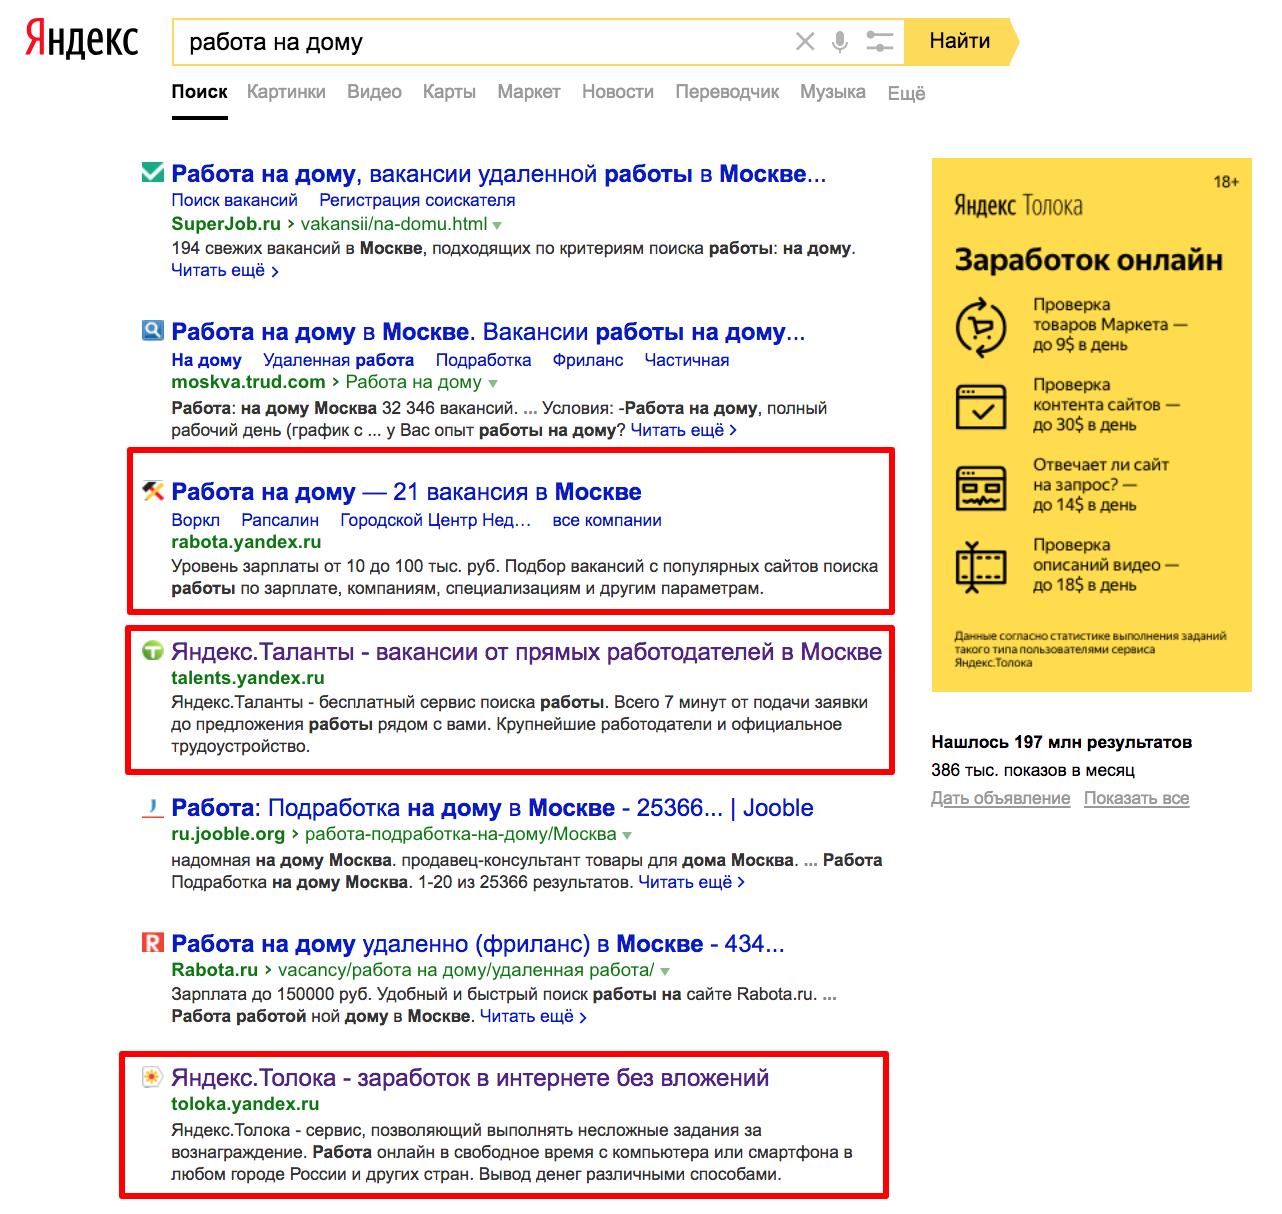 Сервисы Яндекса в поисковой выдаче